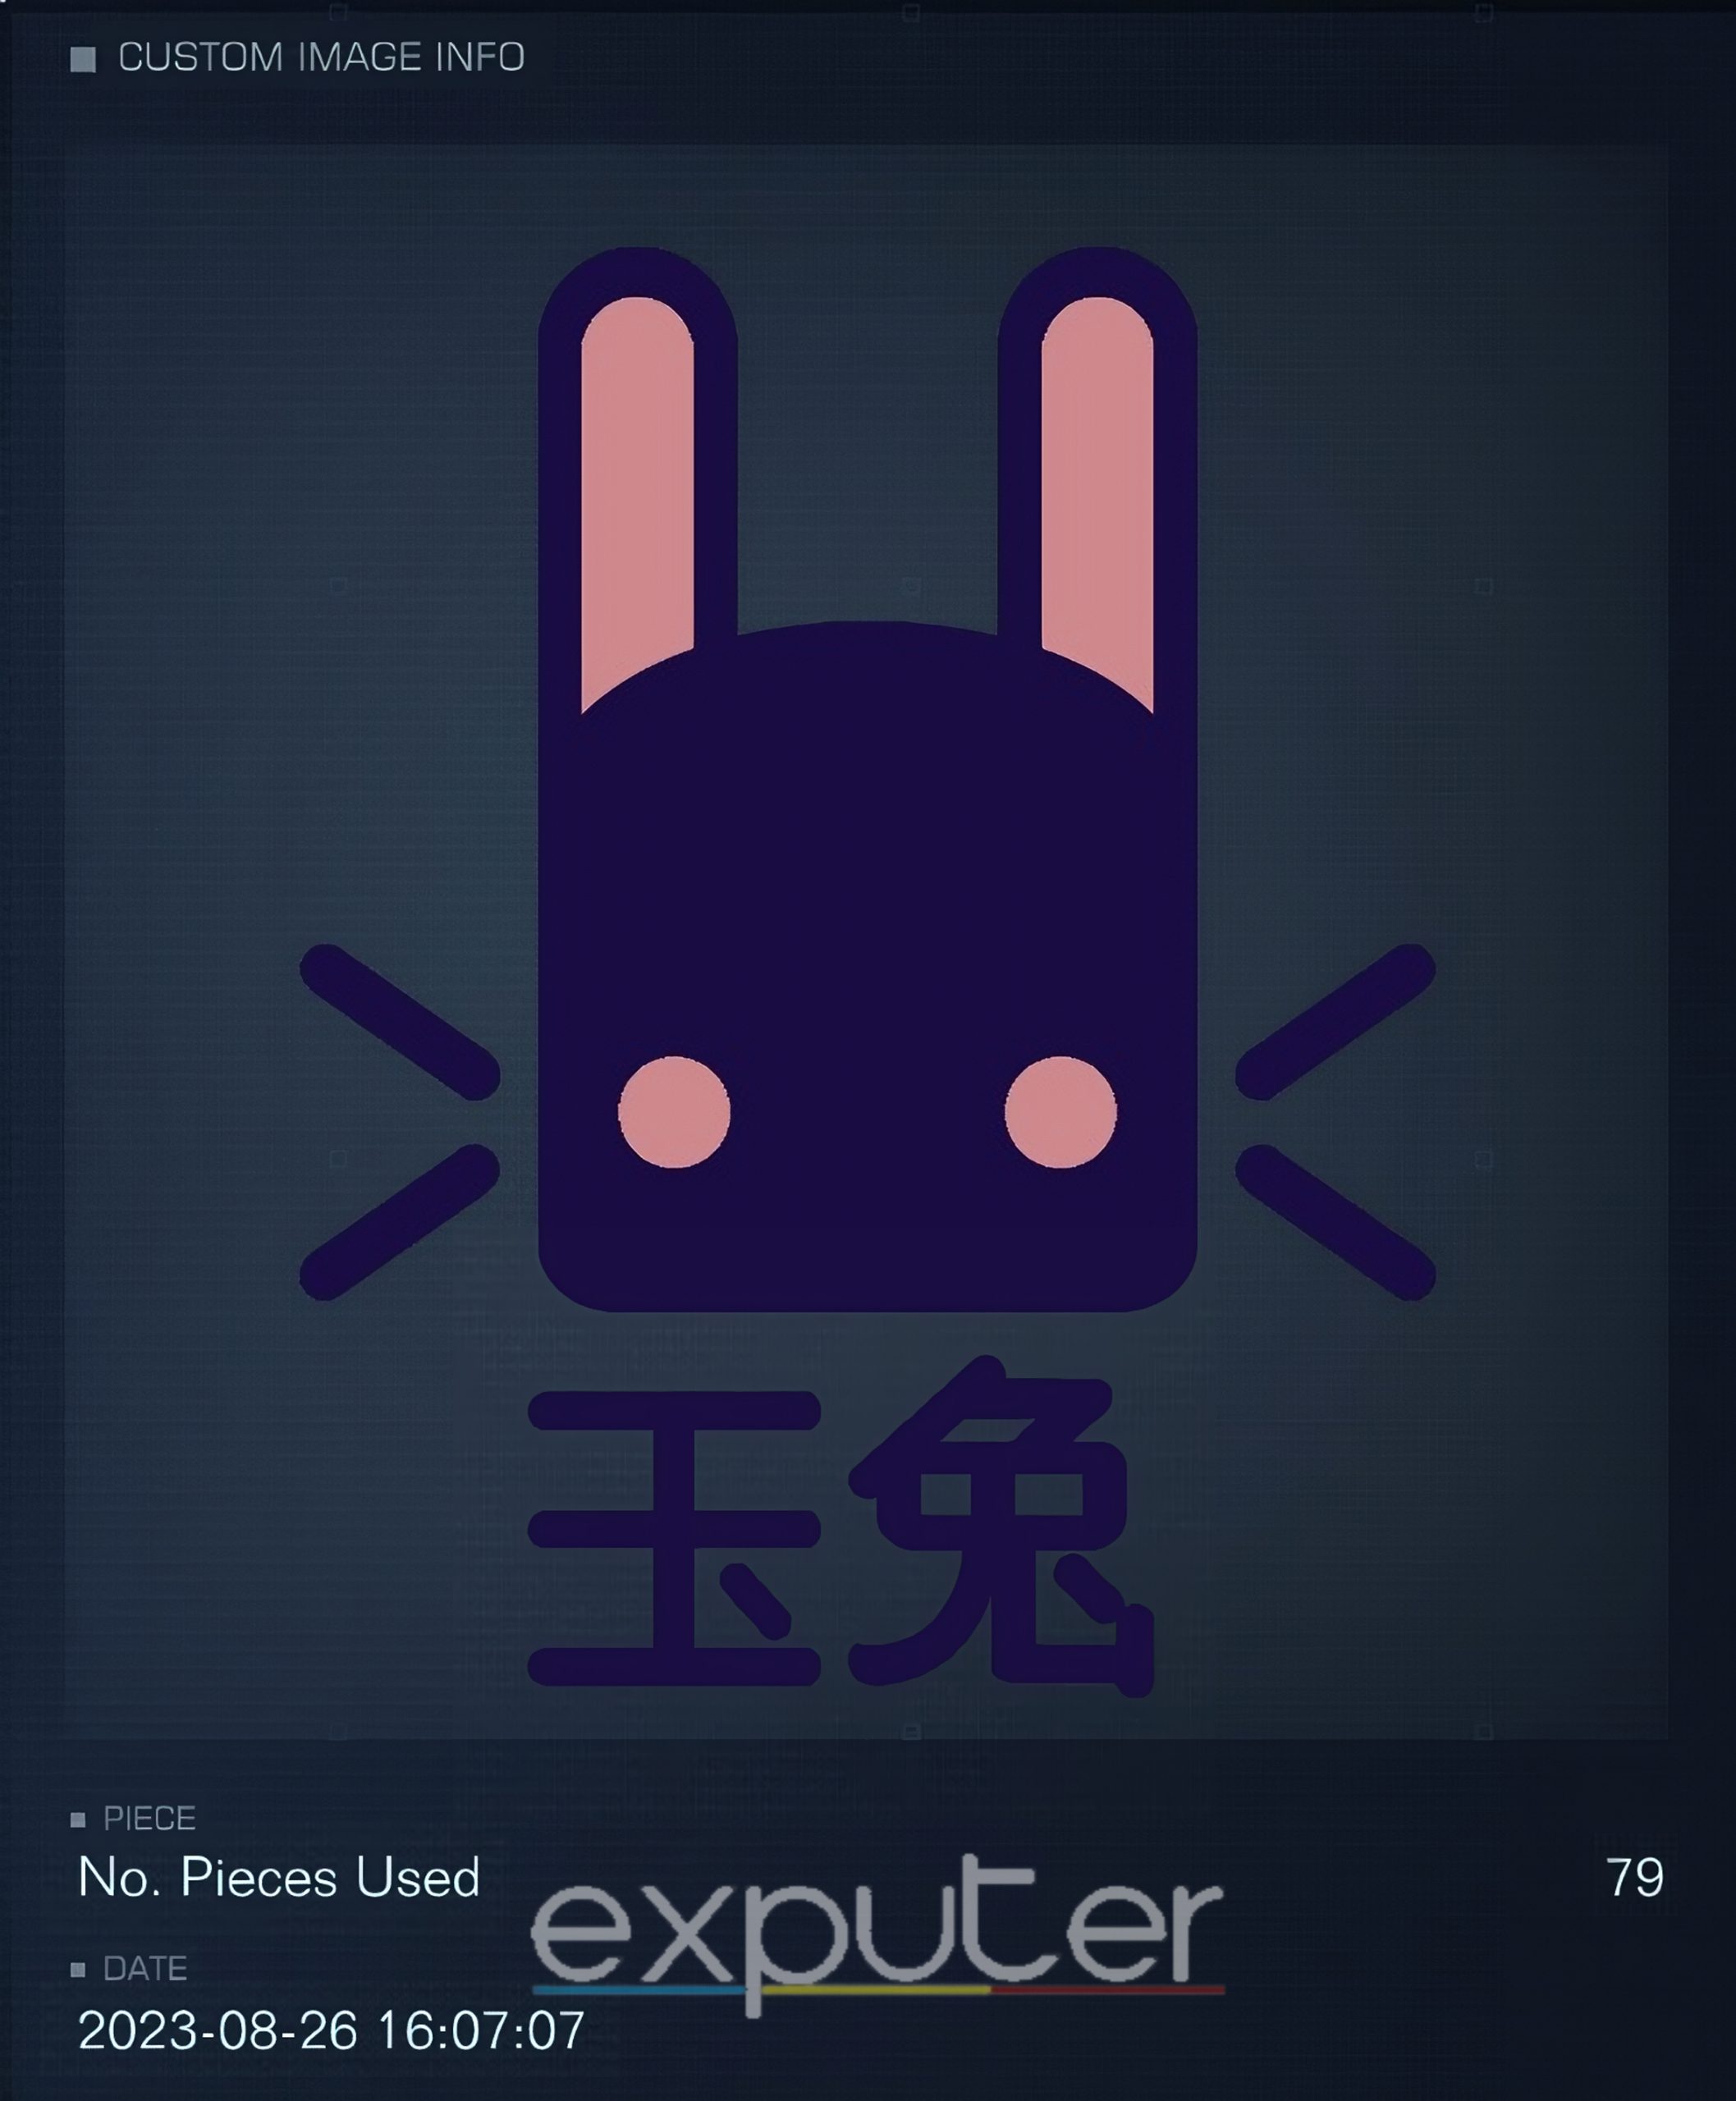 user-made emblems ac6